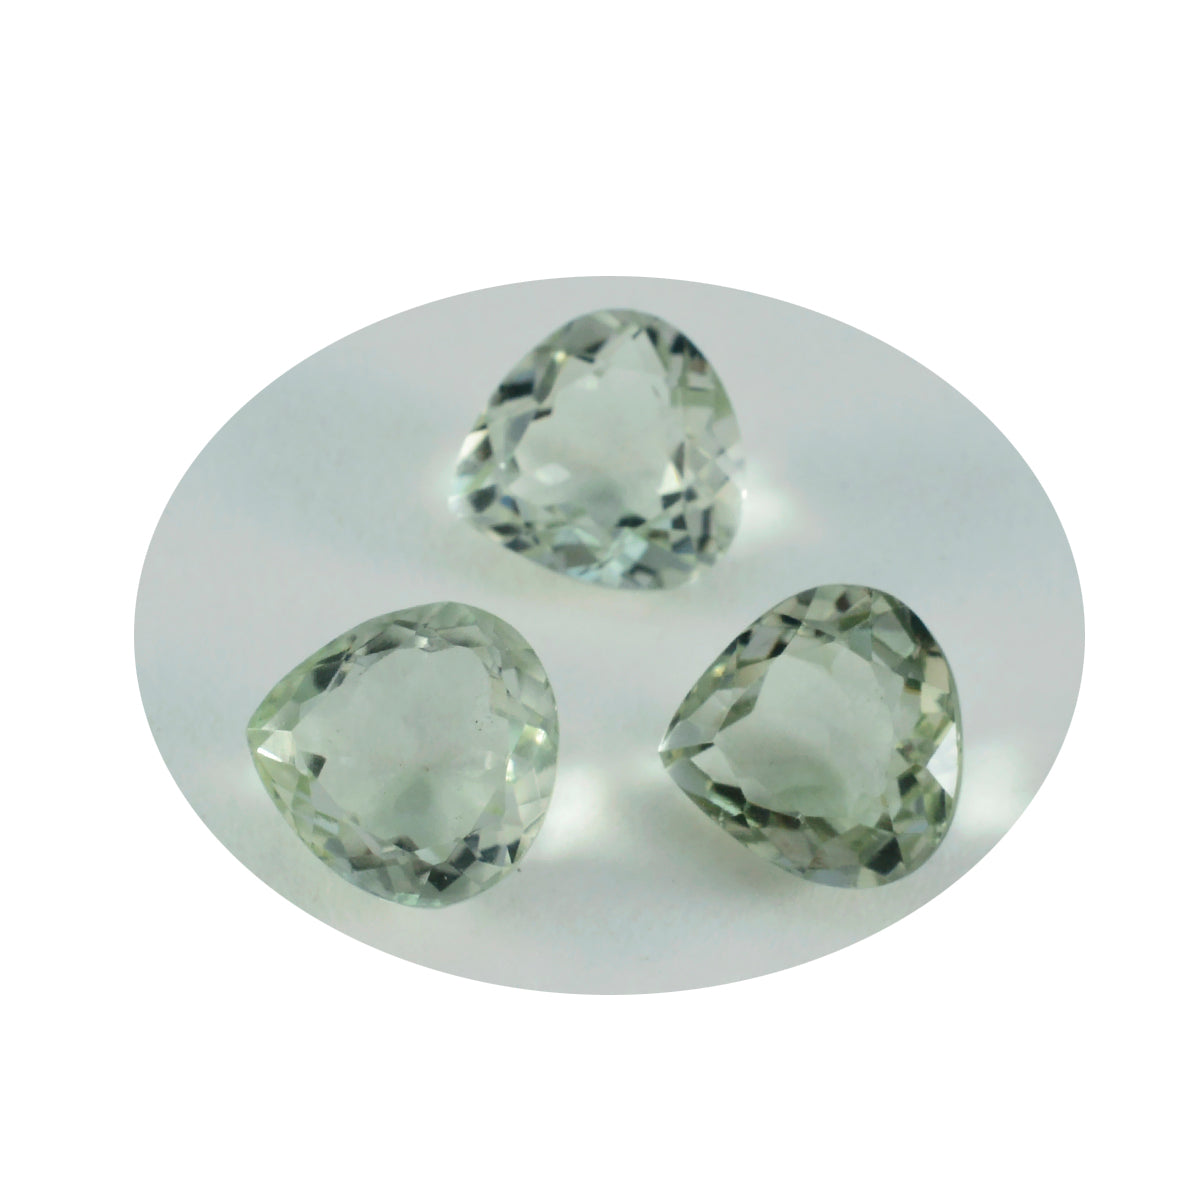 Riyogems 1PC Green Amethyst Faceted 12x12 mm Heart Shape Nice Quality Gemstone